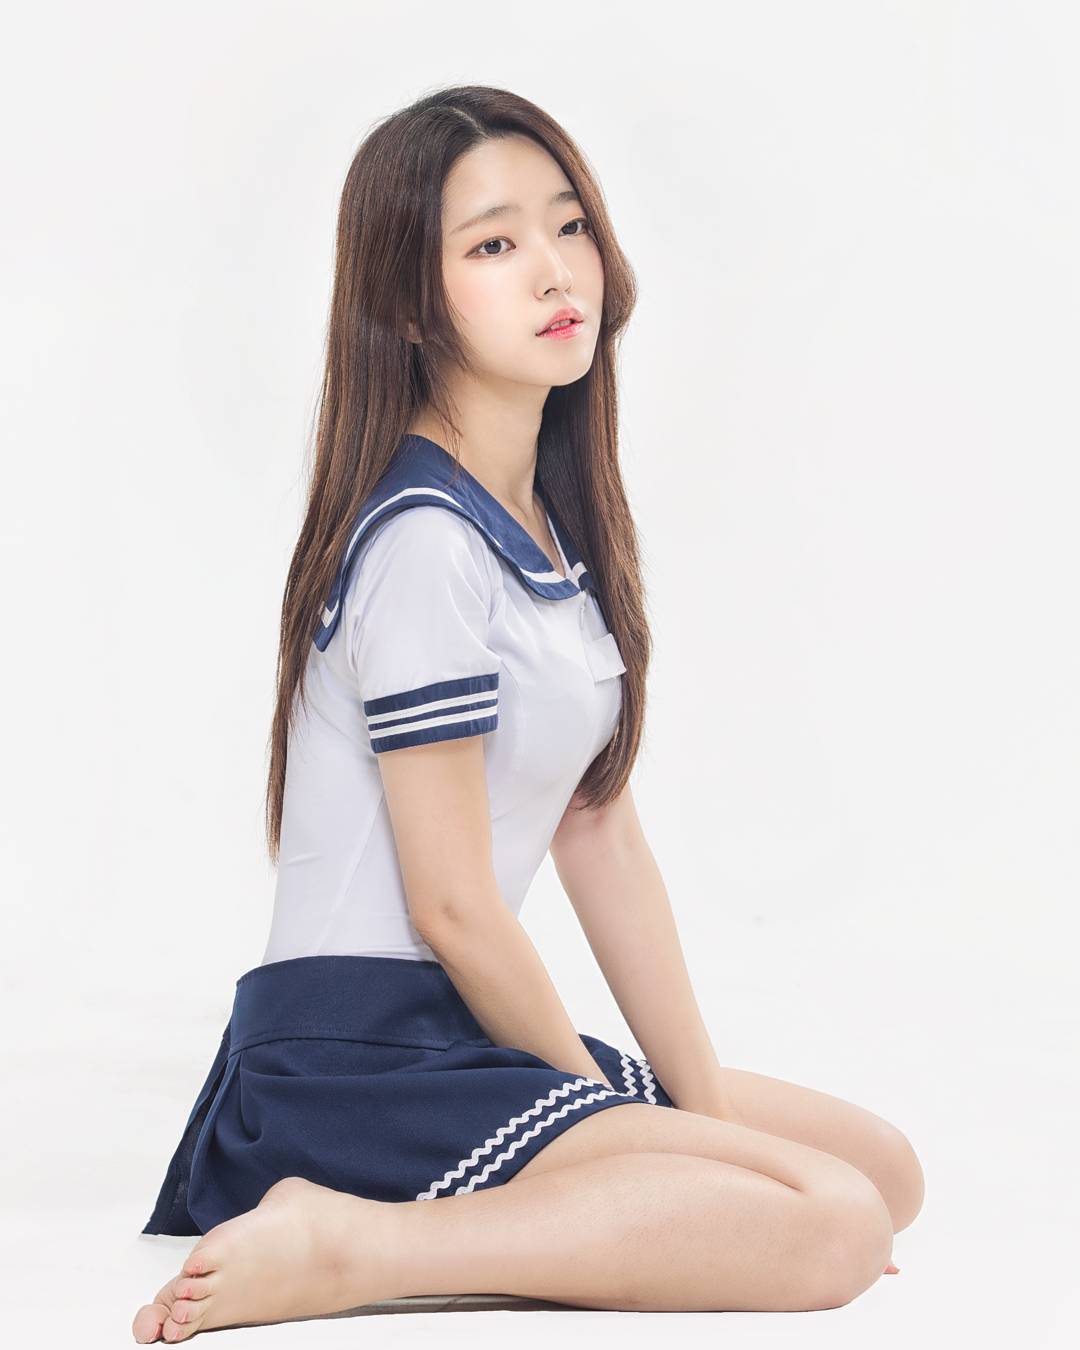 Korean Teen Schoolgirl Pussy